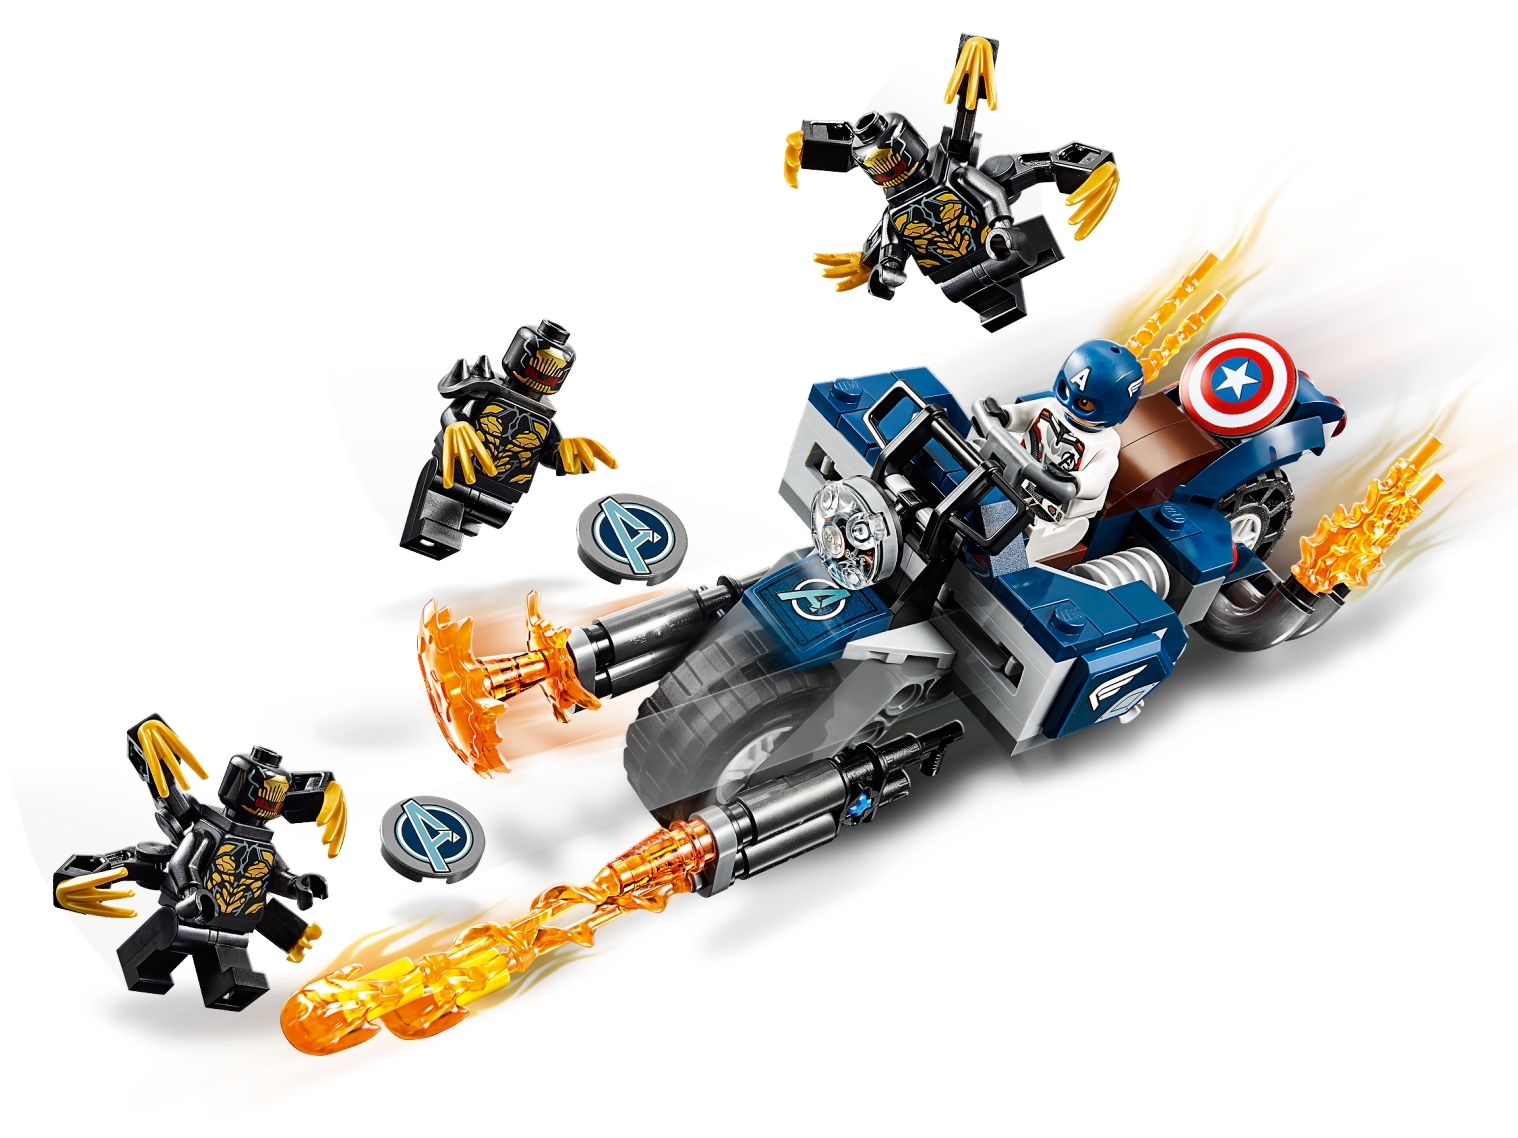 NEW LEGO Captain America FROM SET 76123 AVENGERS ENDGAME sh560 